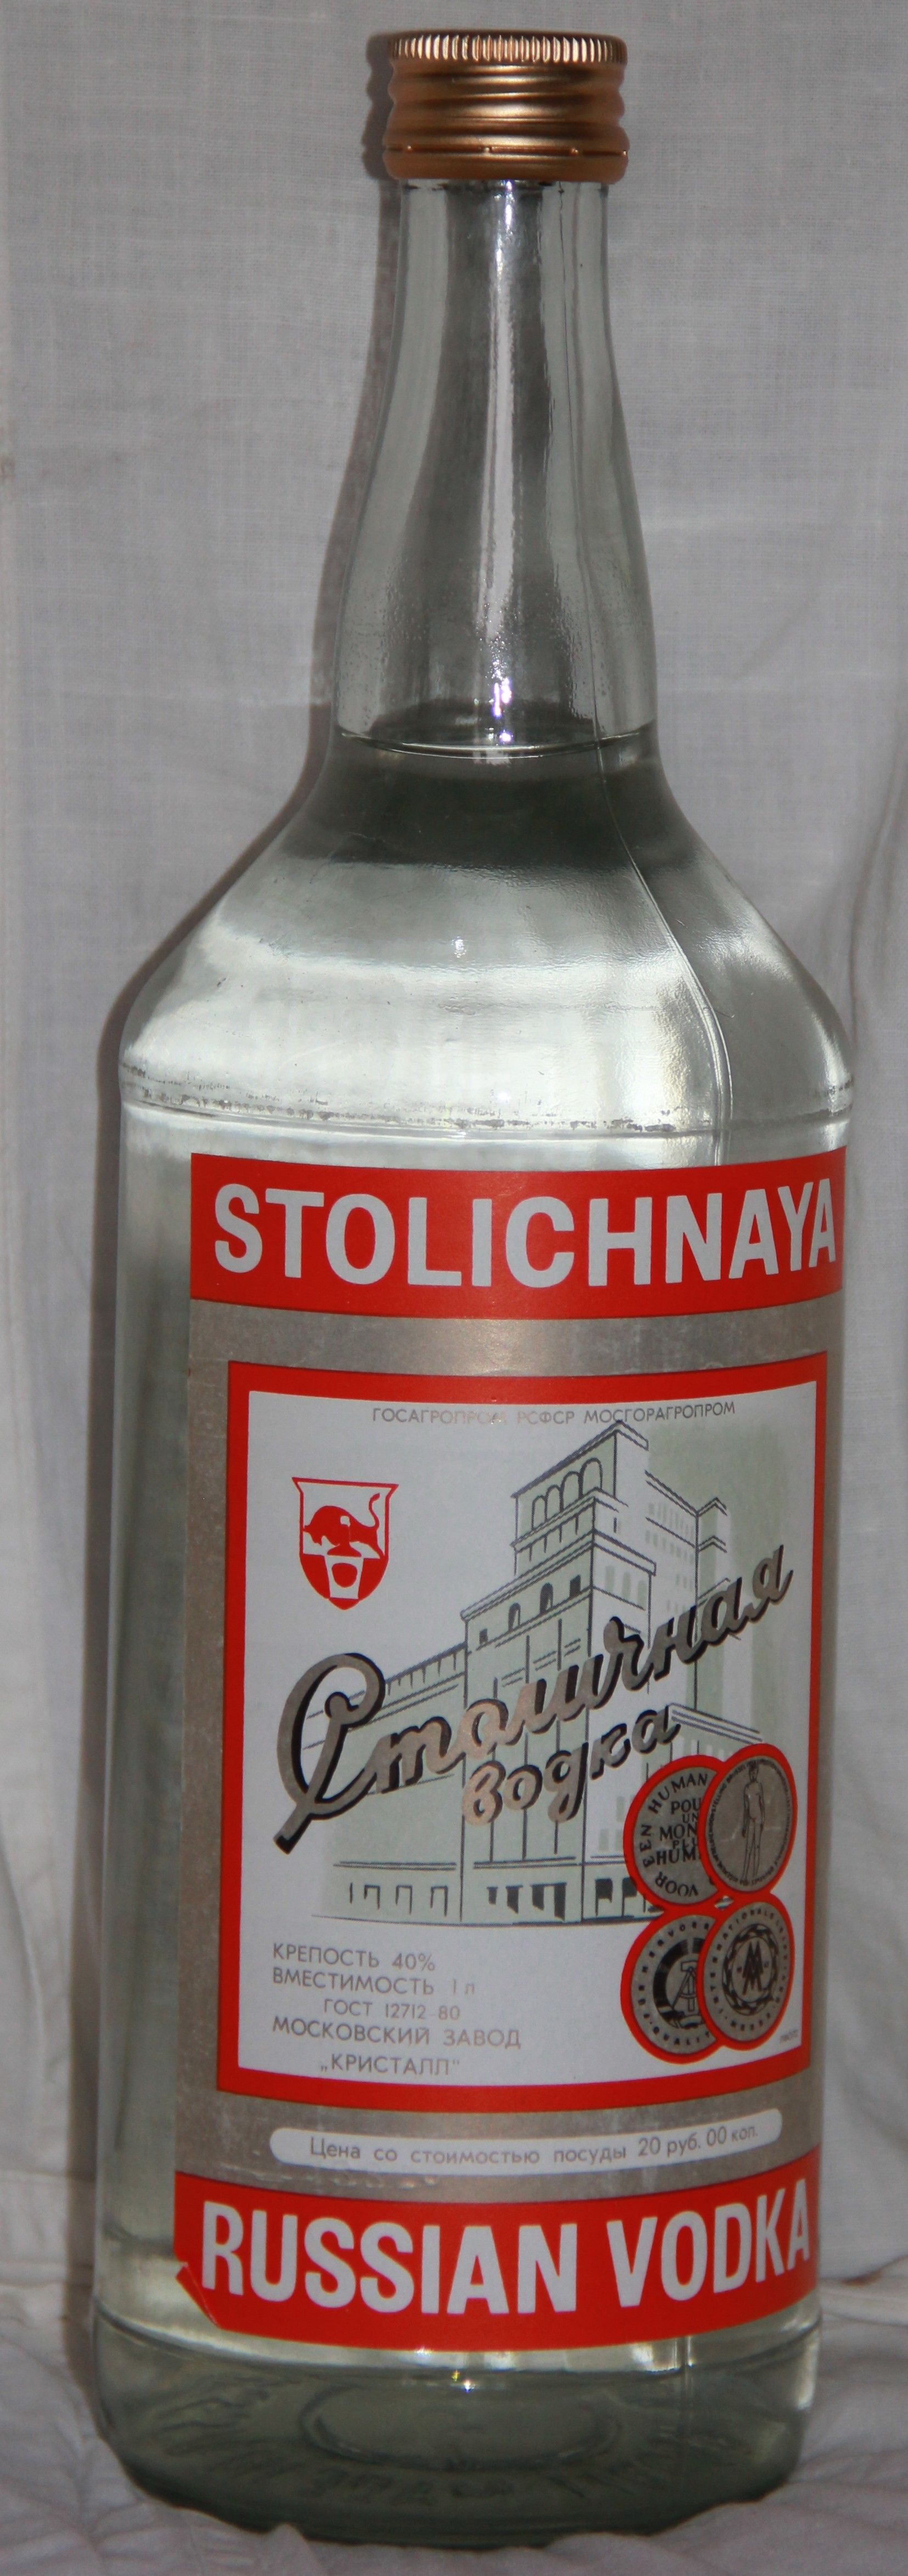 Сталиличная водка СССР